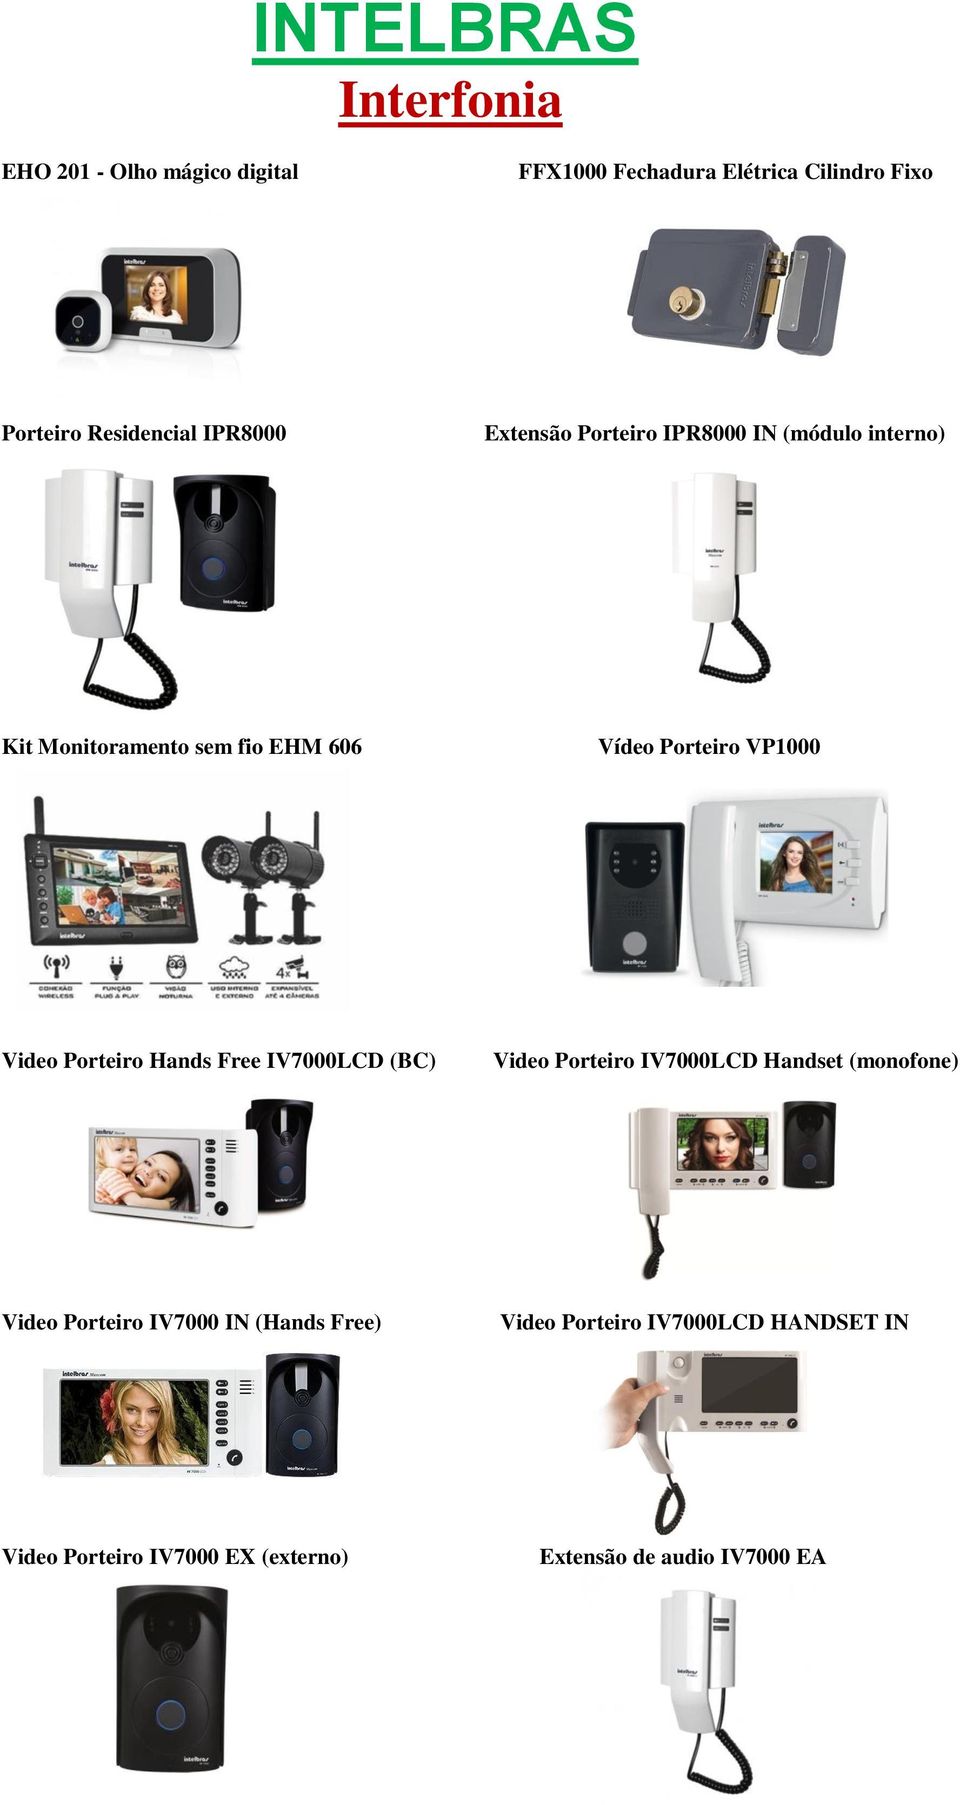 Porteiro VP1000 Video Porteiro Hands Free IV7000LCD (BC) Video Porteiro IV7000LCD Handset (monofone) Video